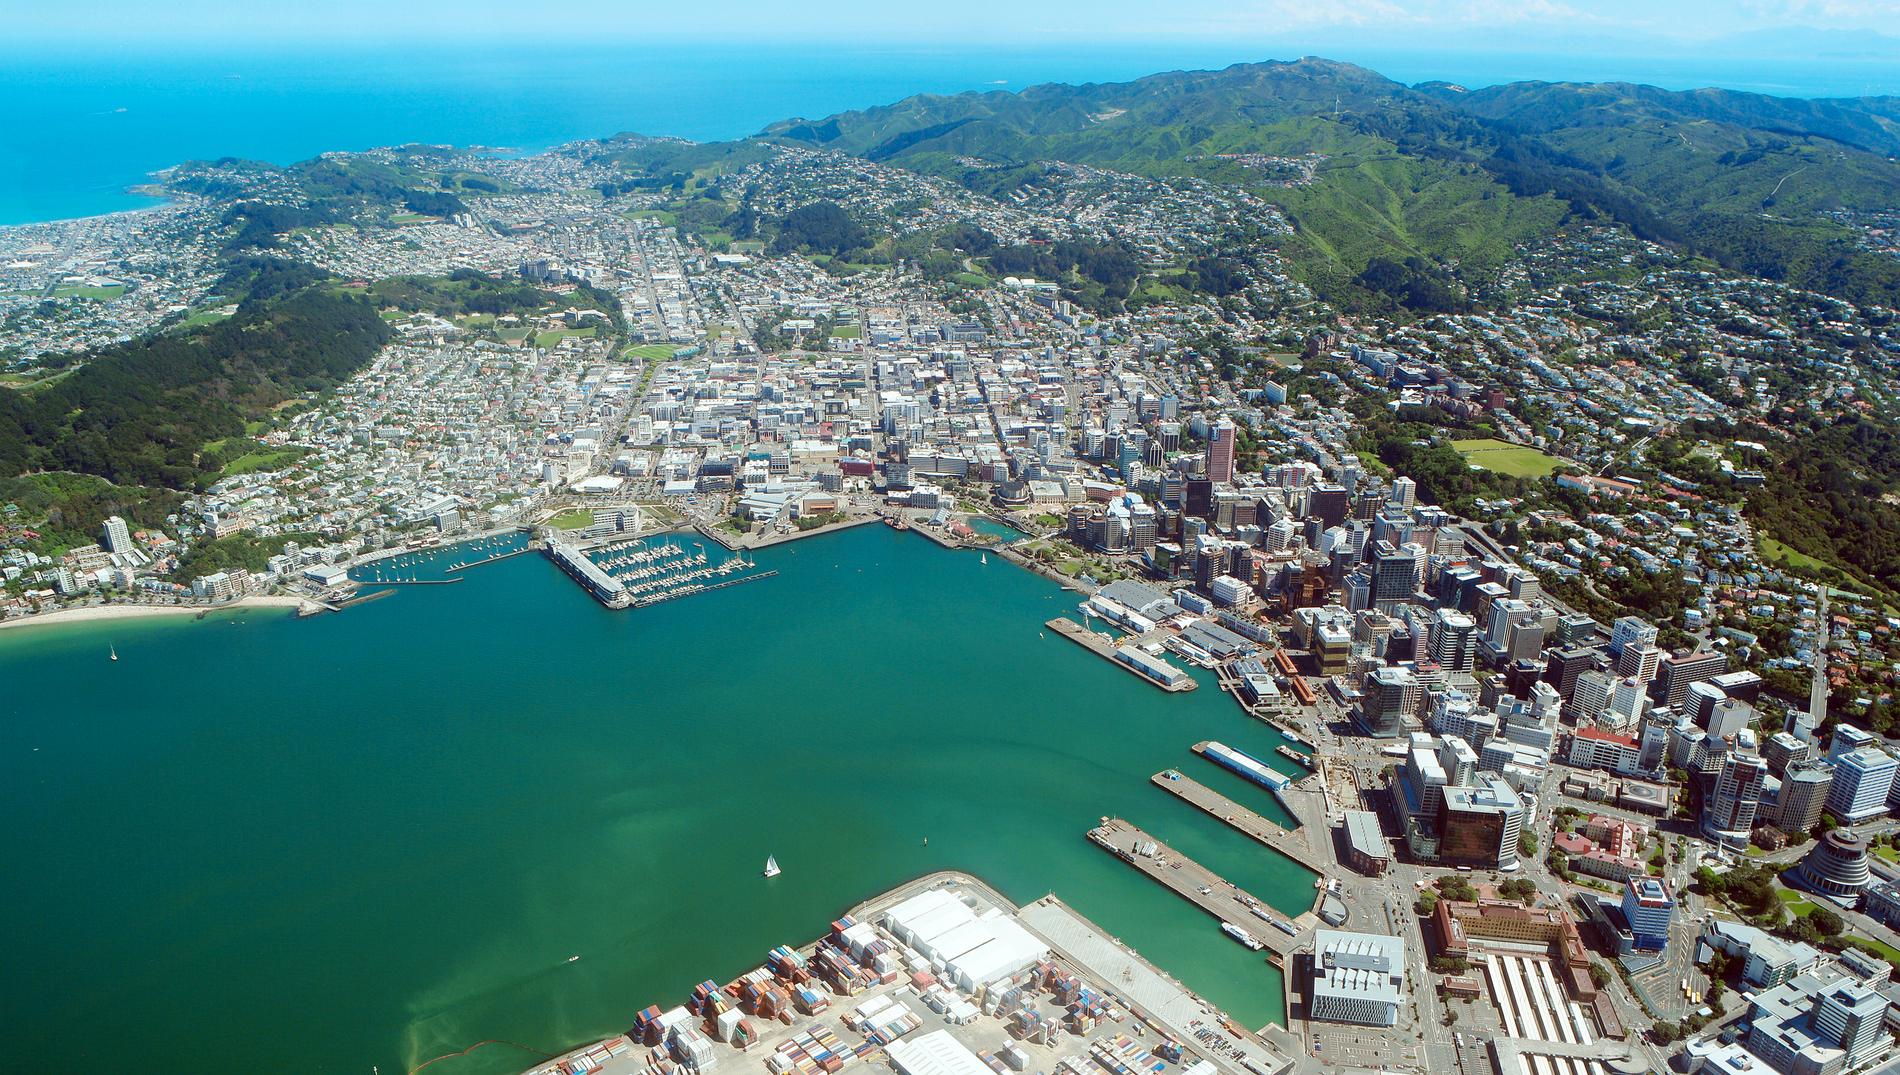 Fler än 5 miljoner människor bor nu i Nya Zeeland. Huvudstaden Wellington har några hundra tusen invånare. Arkivbild